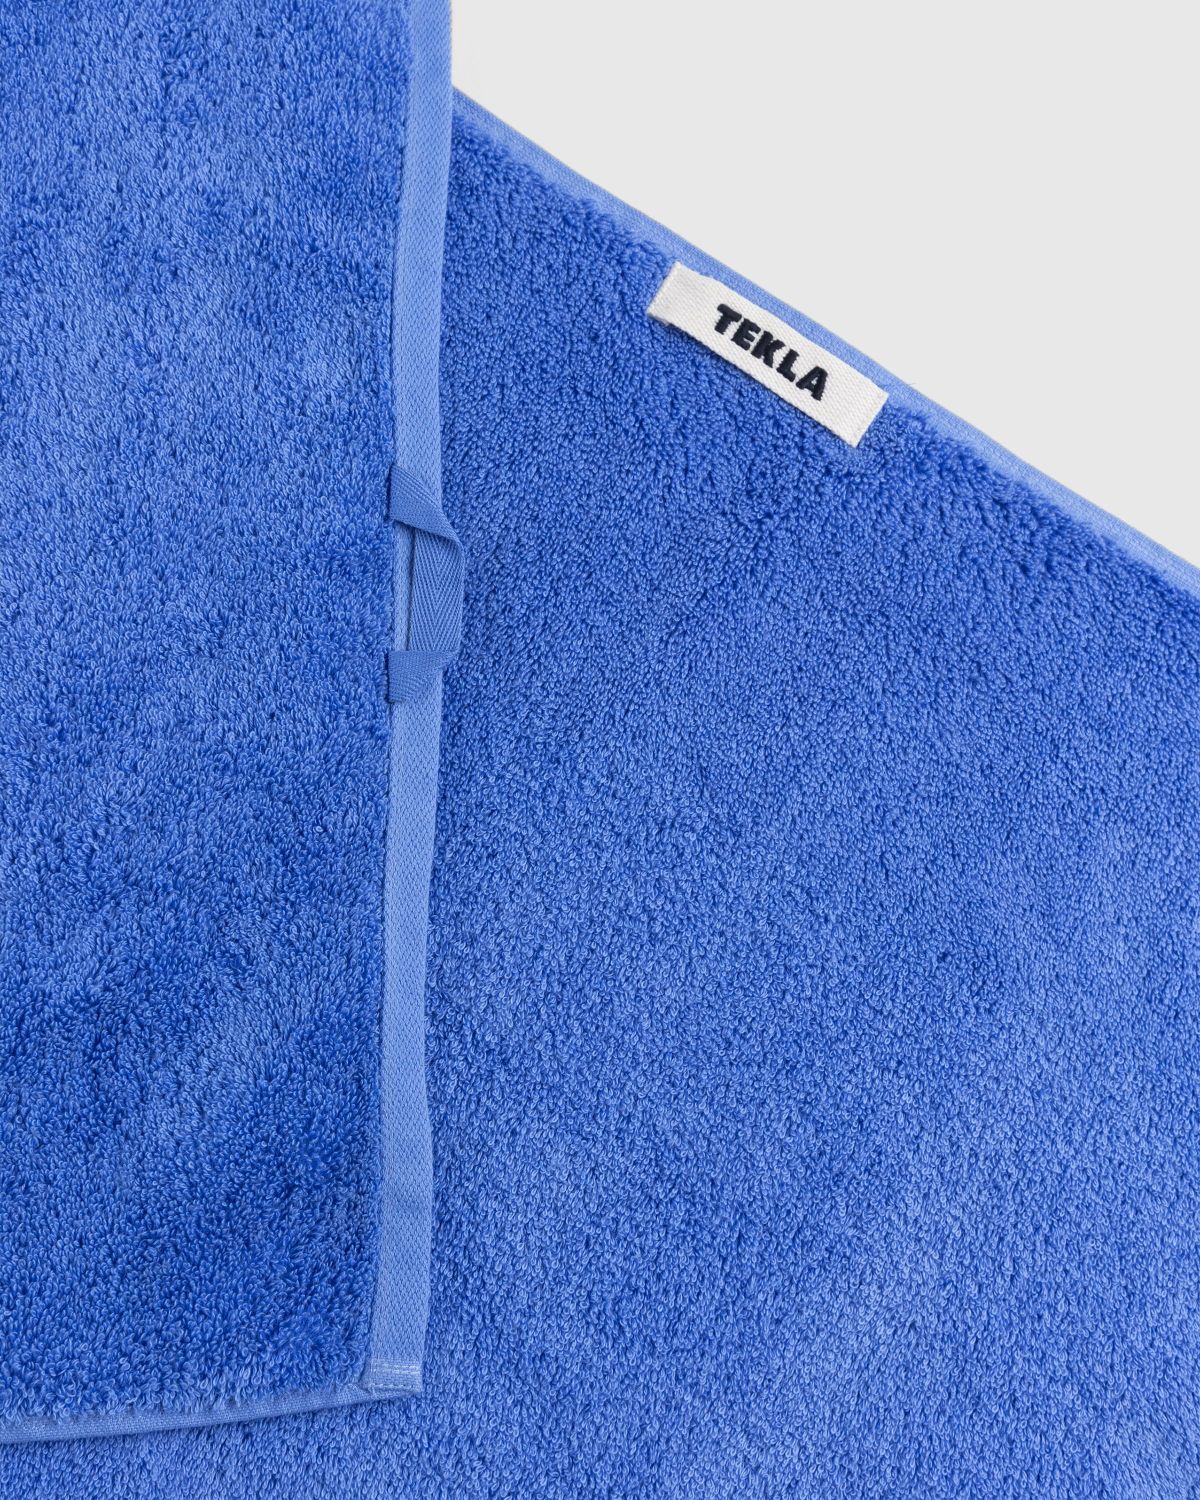 Tekla – Guest Towel Clear Blue - Towels - Blue - Image 3